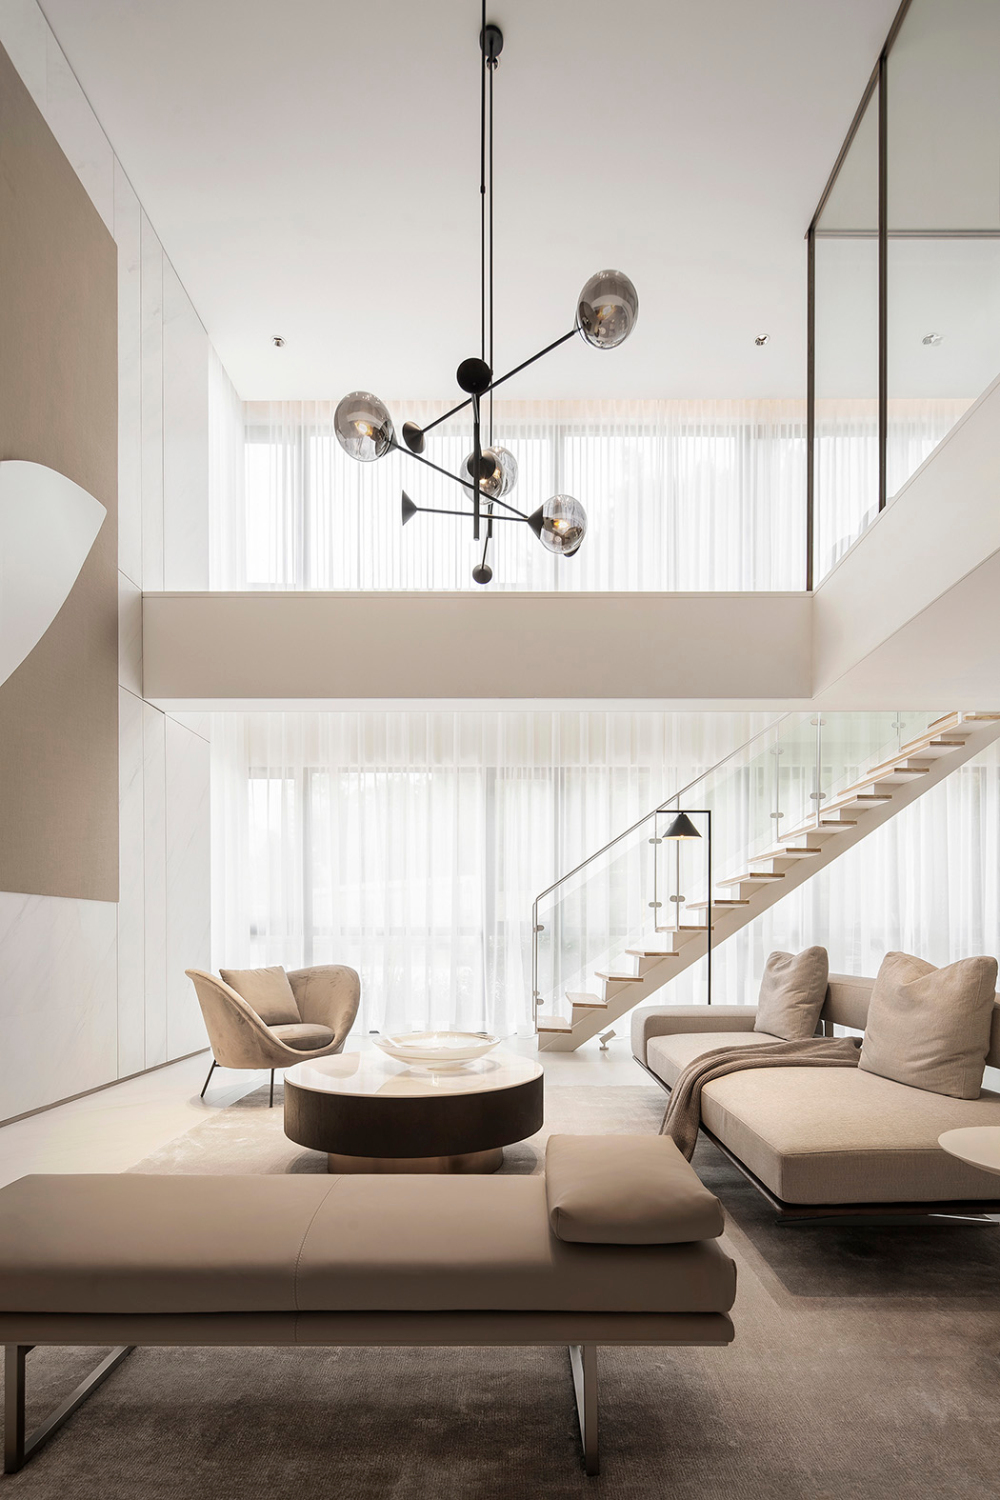 轻奢素雅风格室内家装案例效果图-客厅楼梯